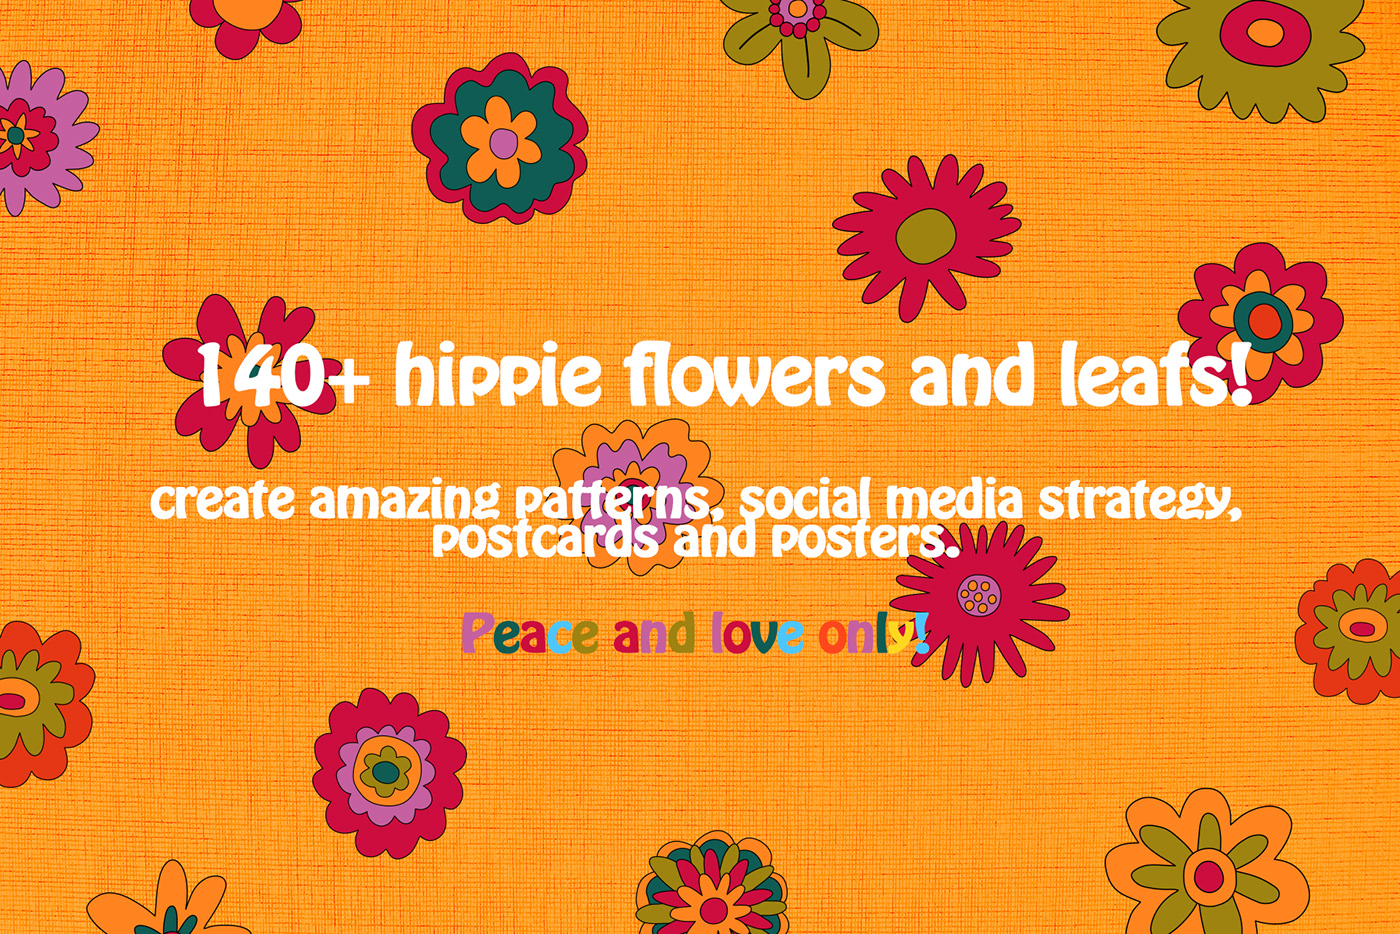 60s 70s 80s Flowers groovy hippie nostalgia psychedelic Retro vector